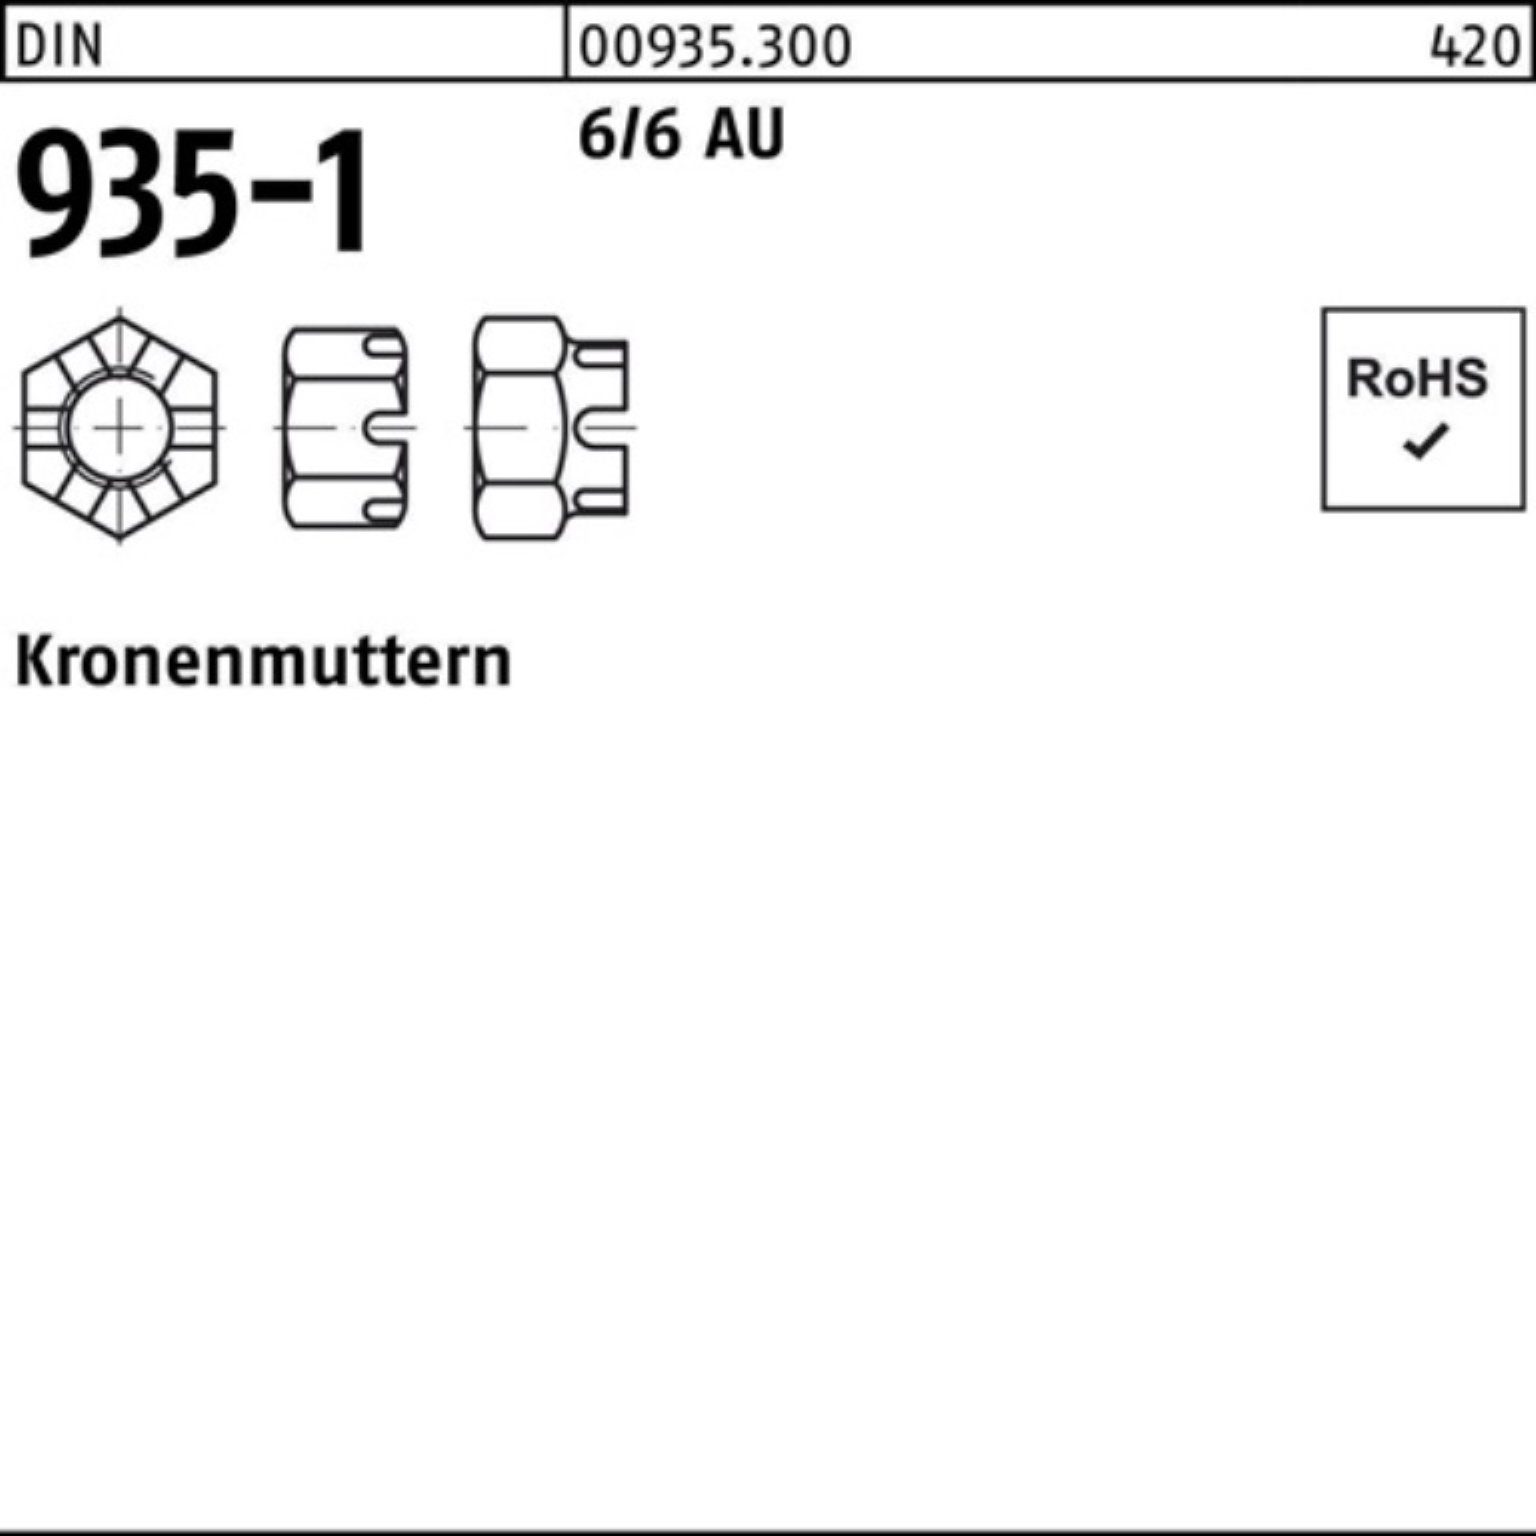 Reyher Kronenmutter 500er Pack 500 6/6 Automatenstahl DIN Kronenmutter M6 Stück 935-1 DIN